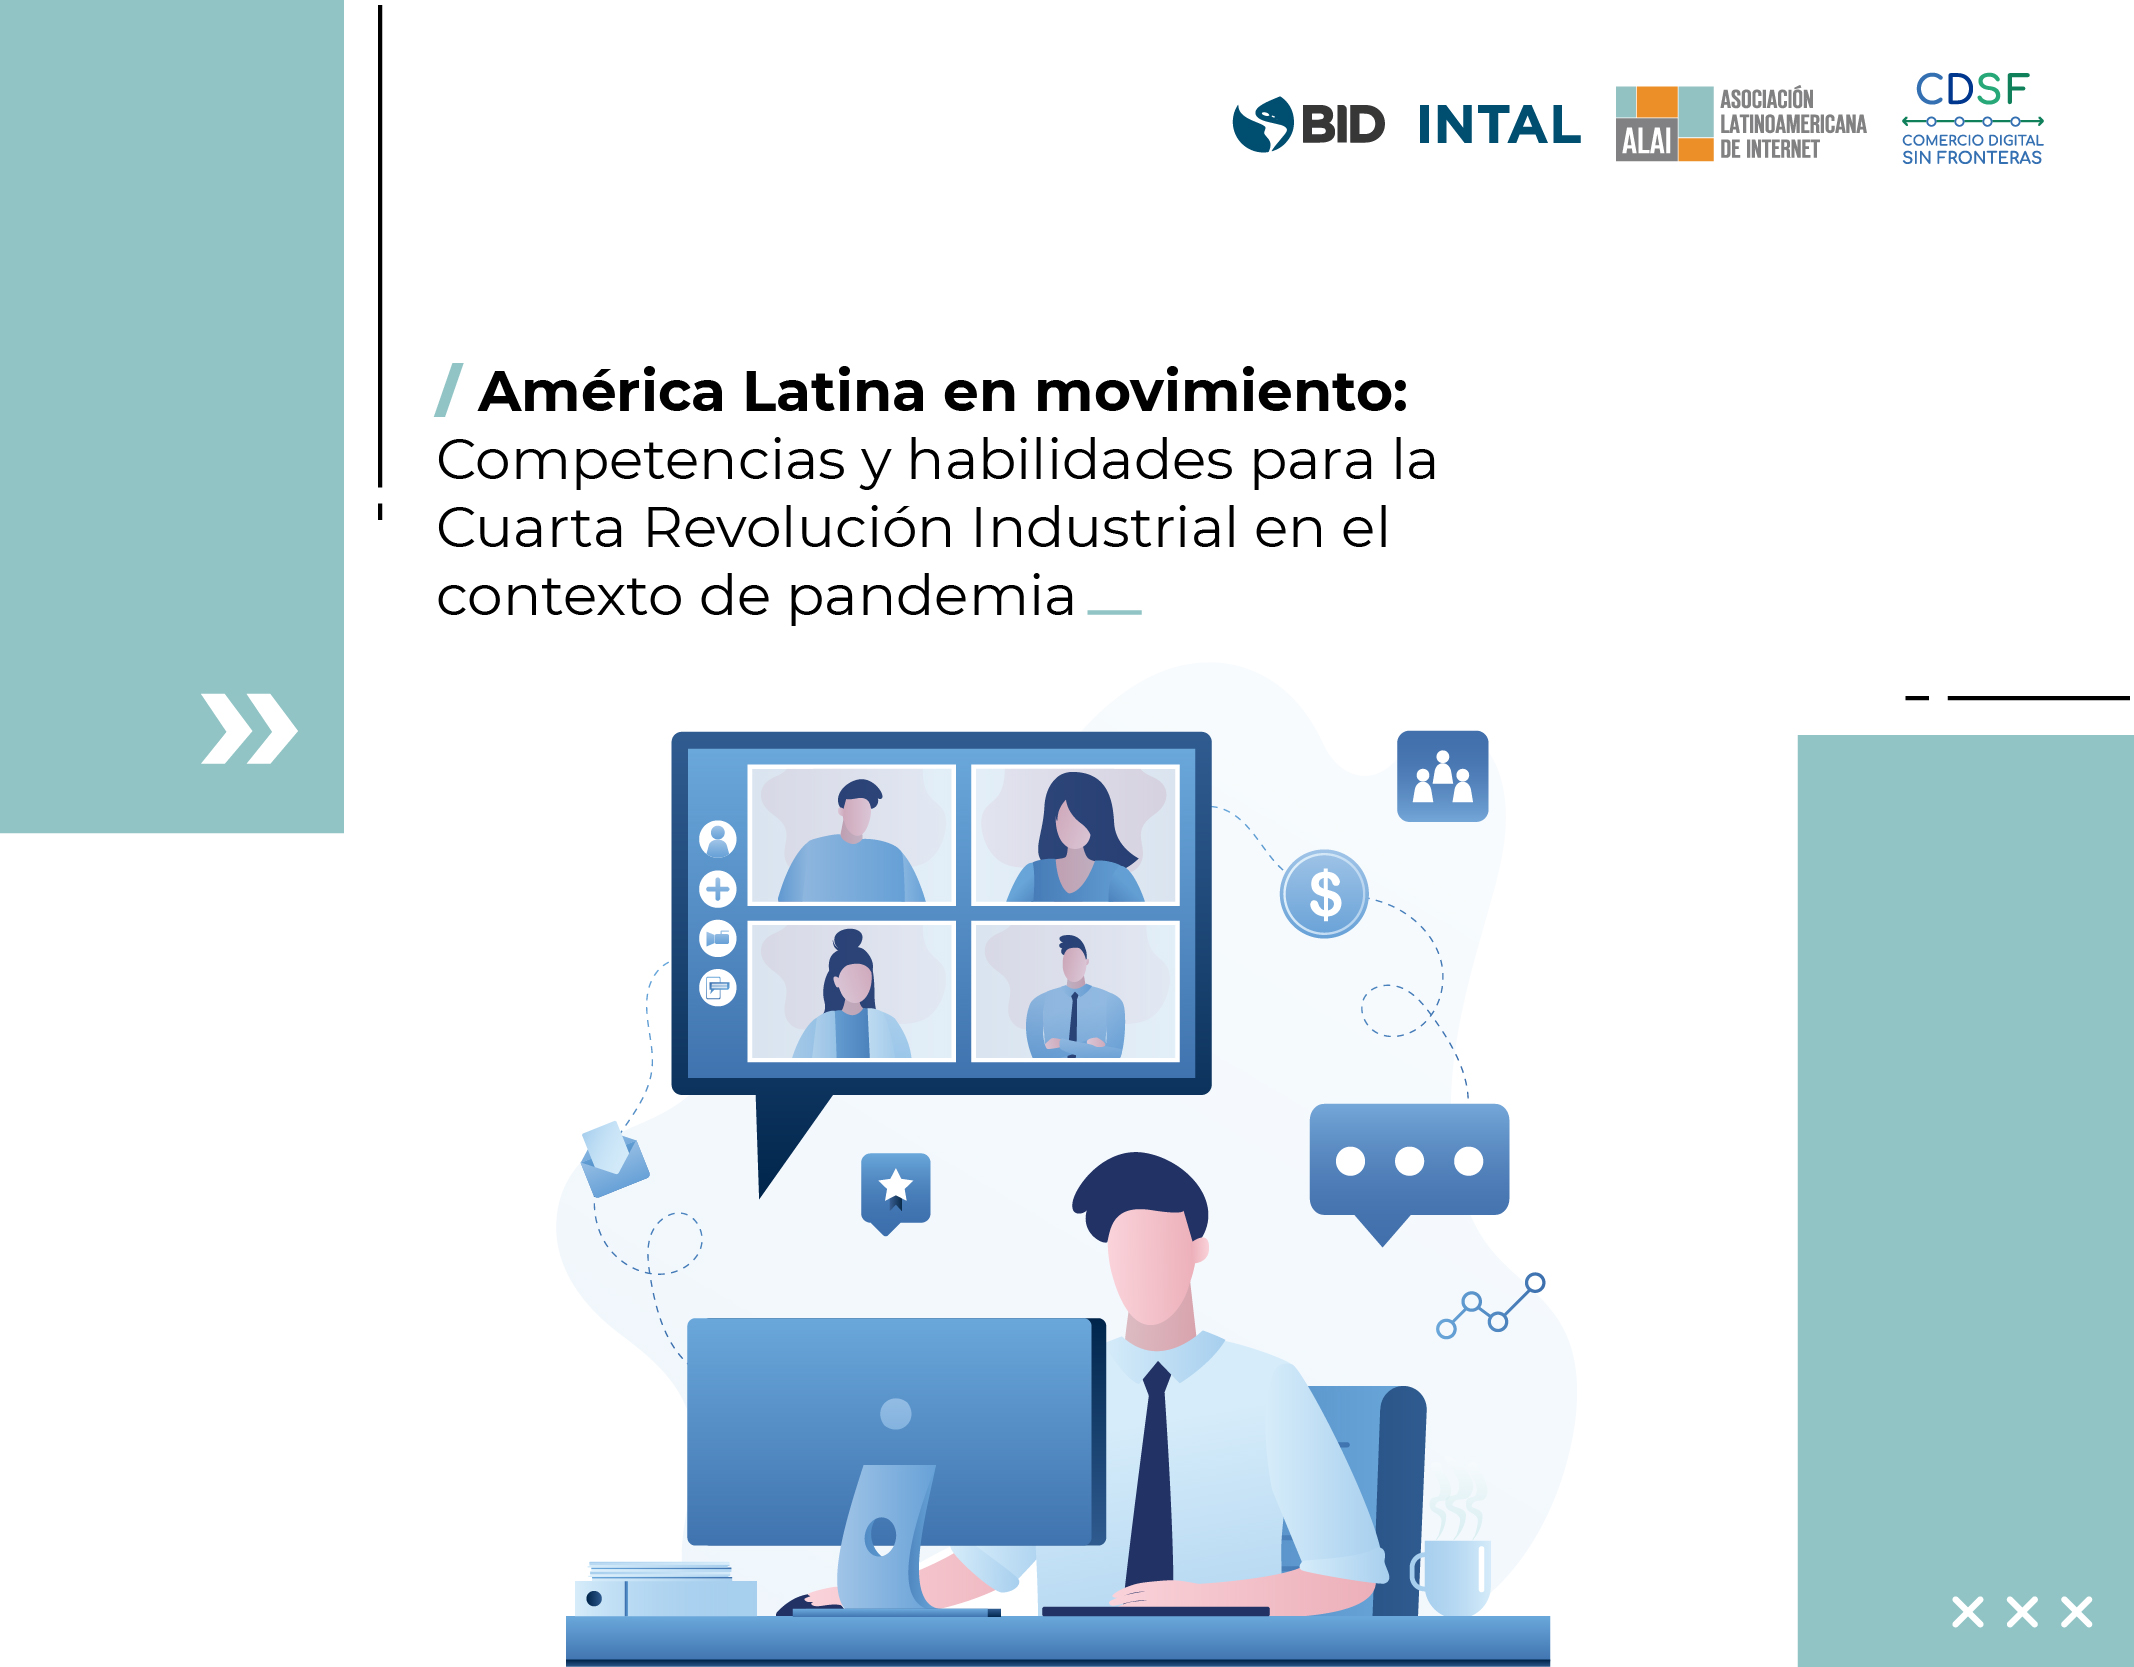 América Latina en movimiento: competencias y habilidades para la Cuarta Revolución Industrial en el contexto de pandemia